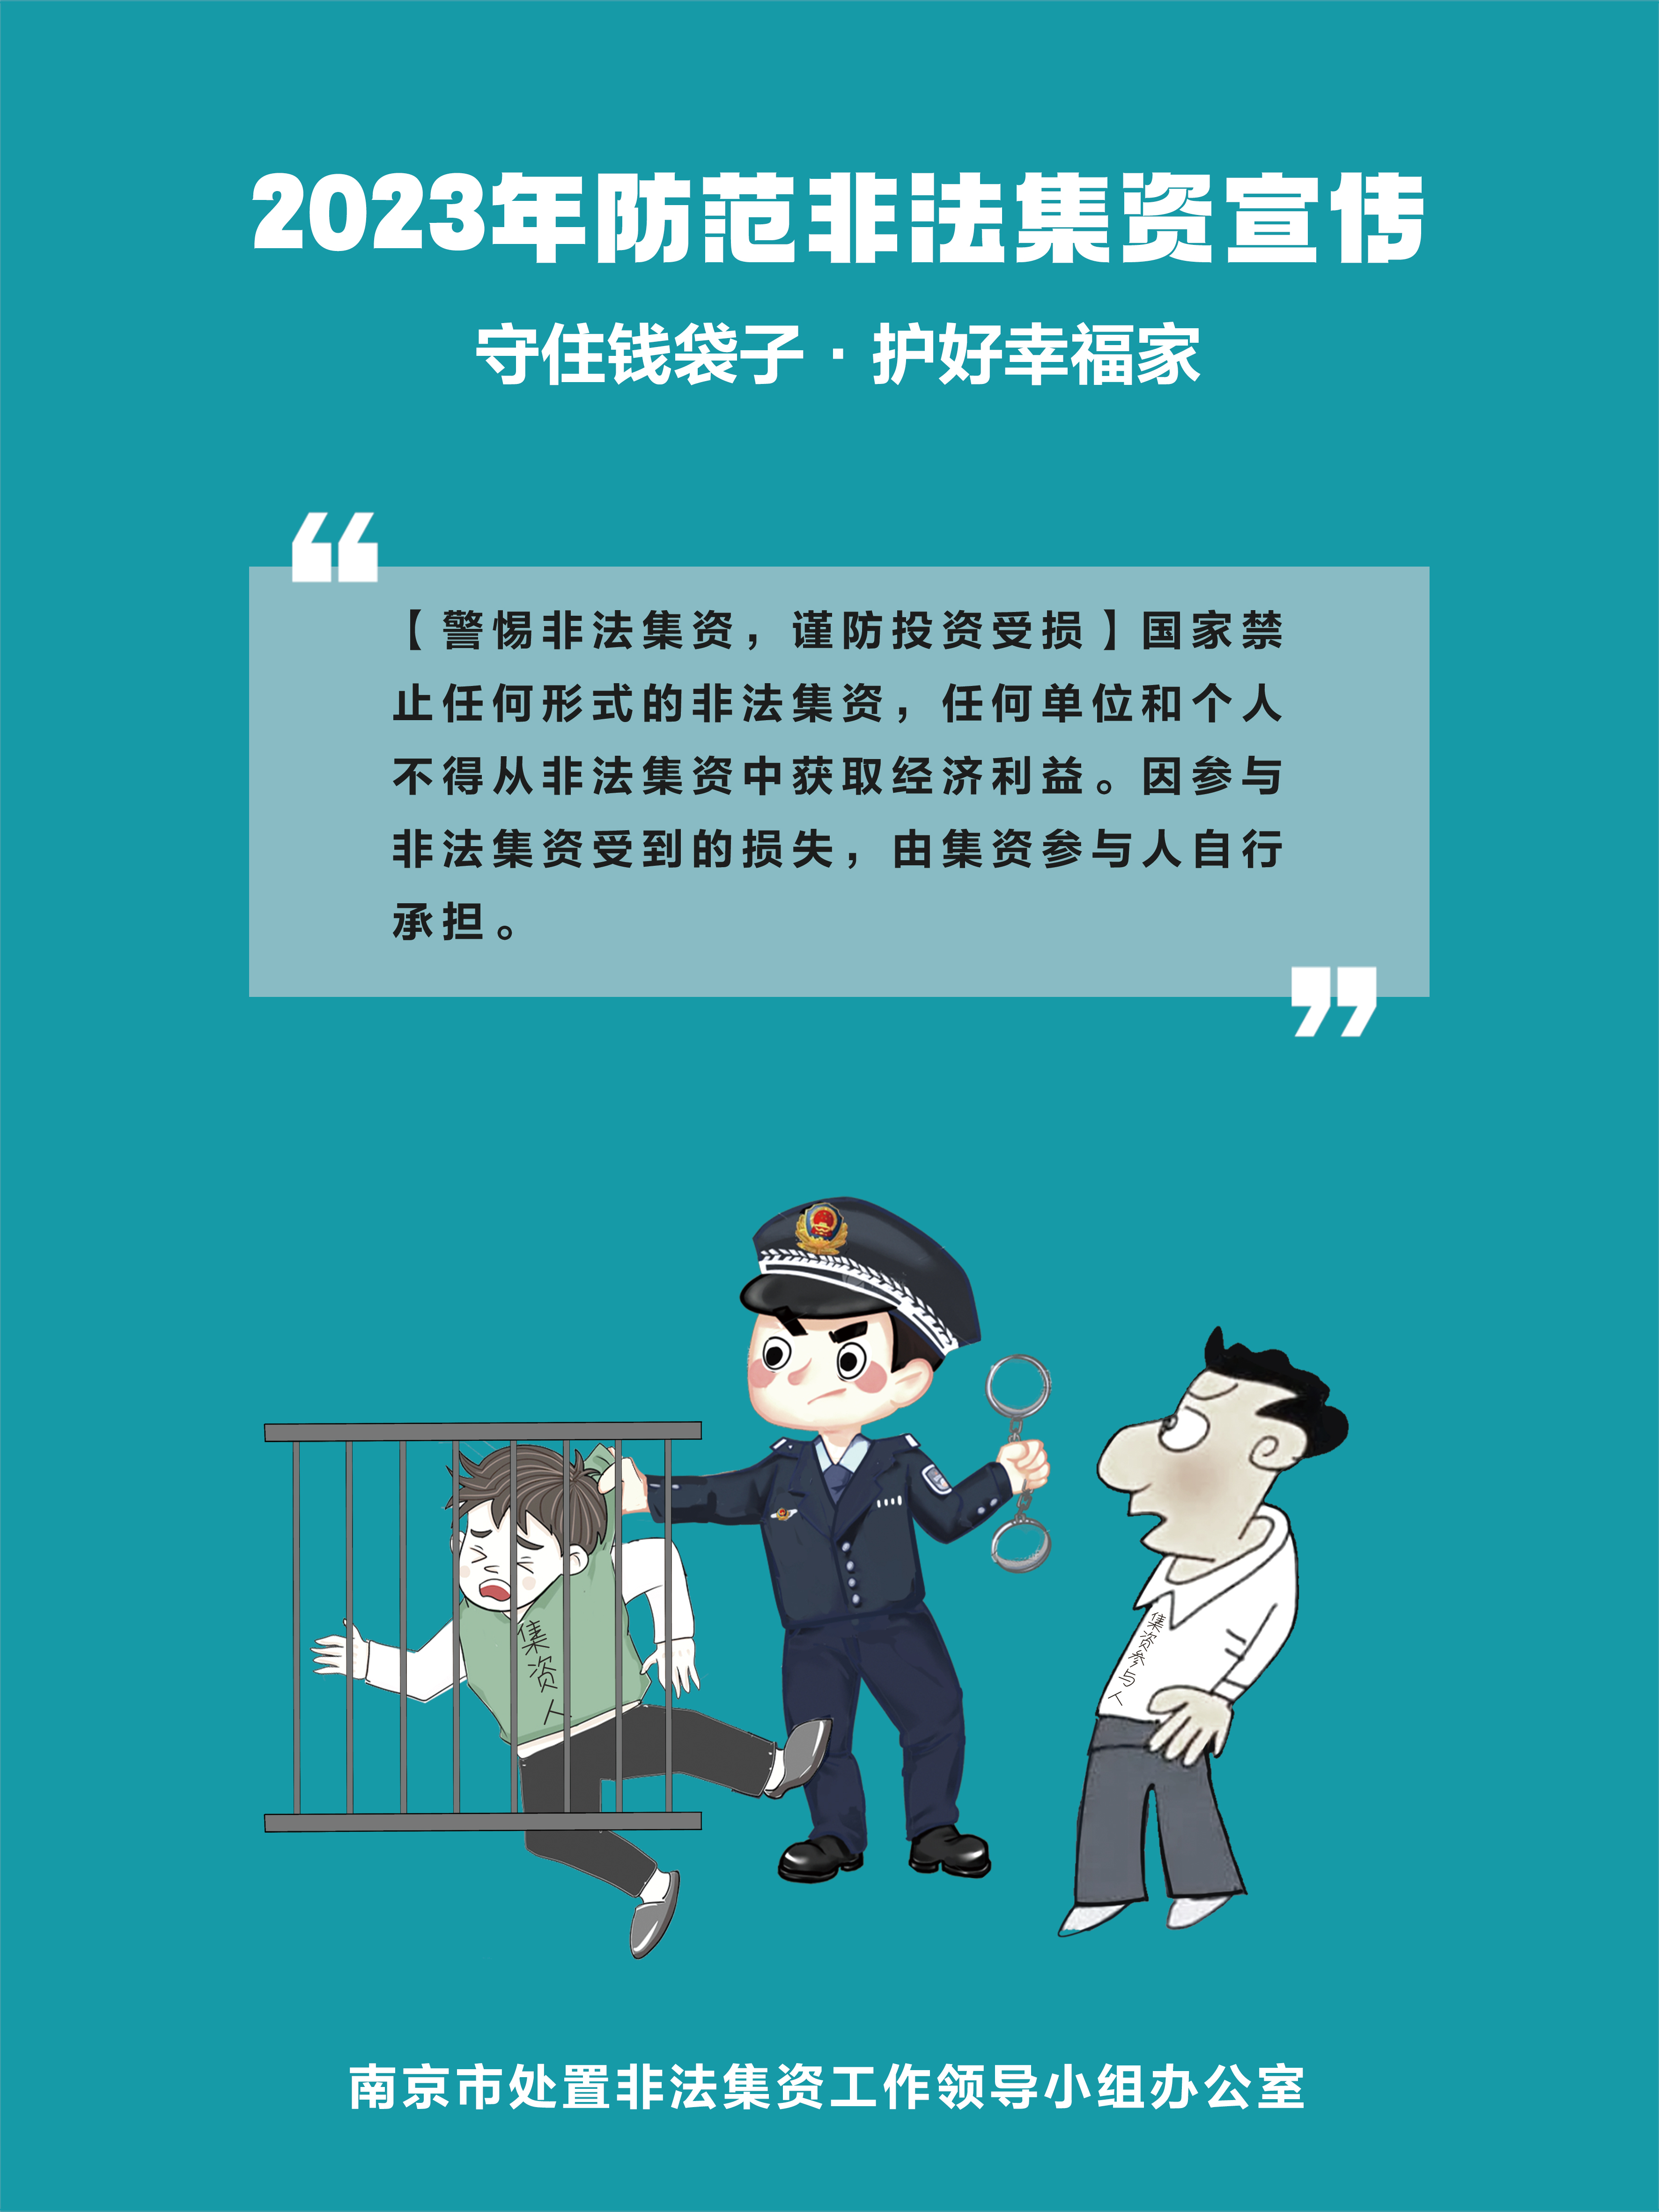 南京市防非宣传海报1